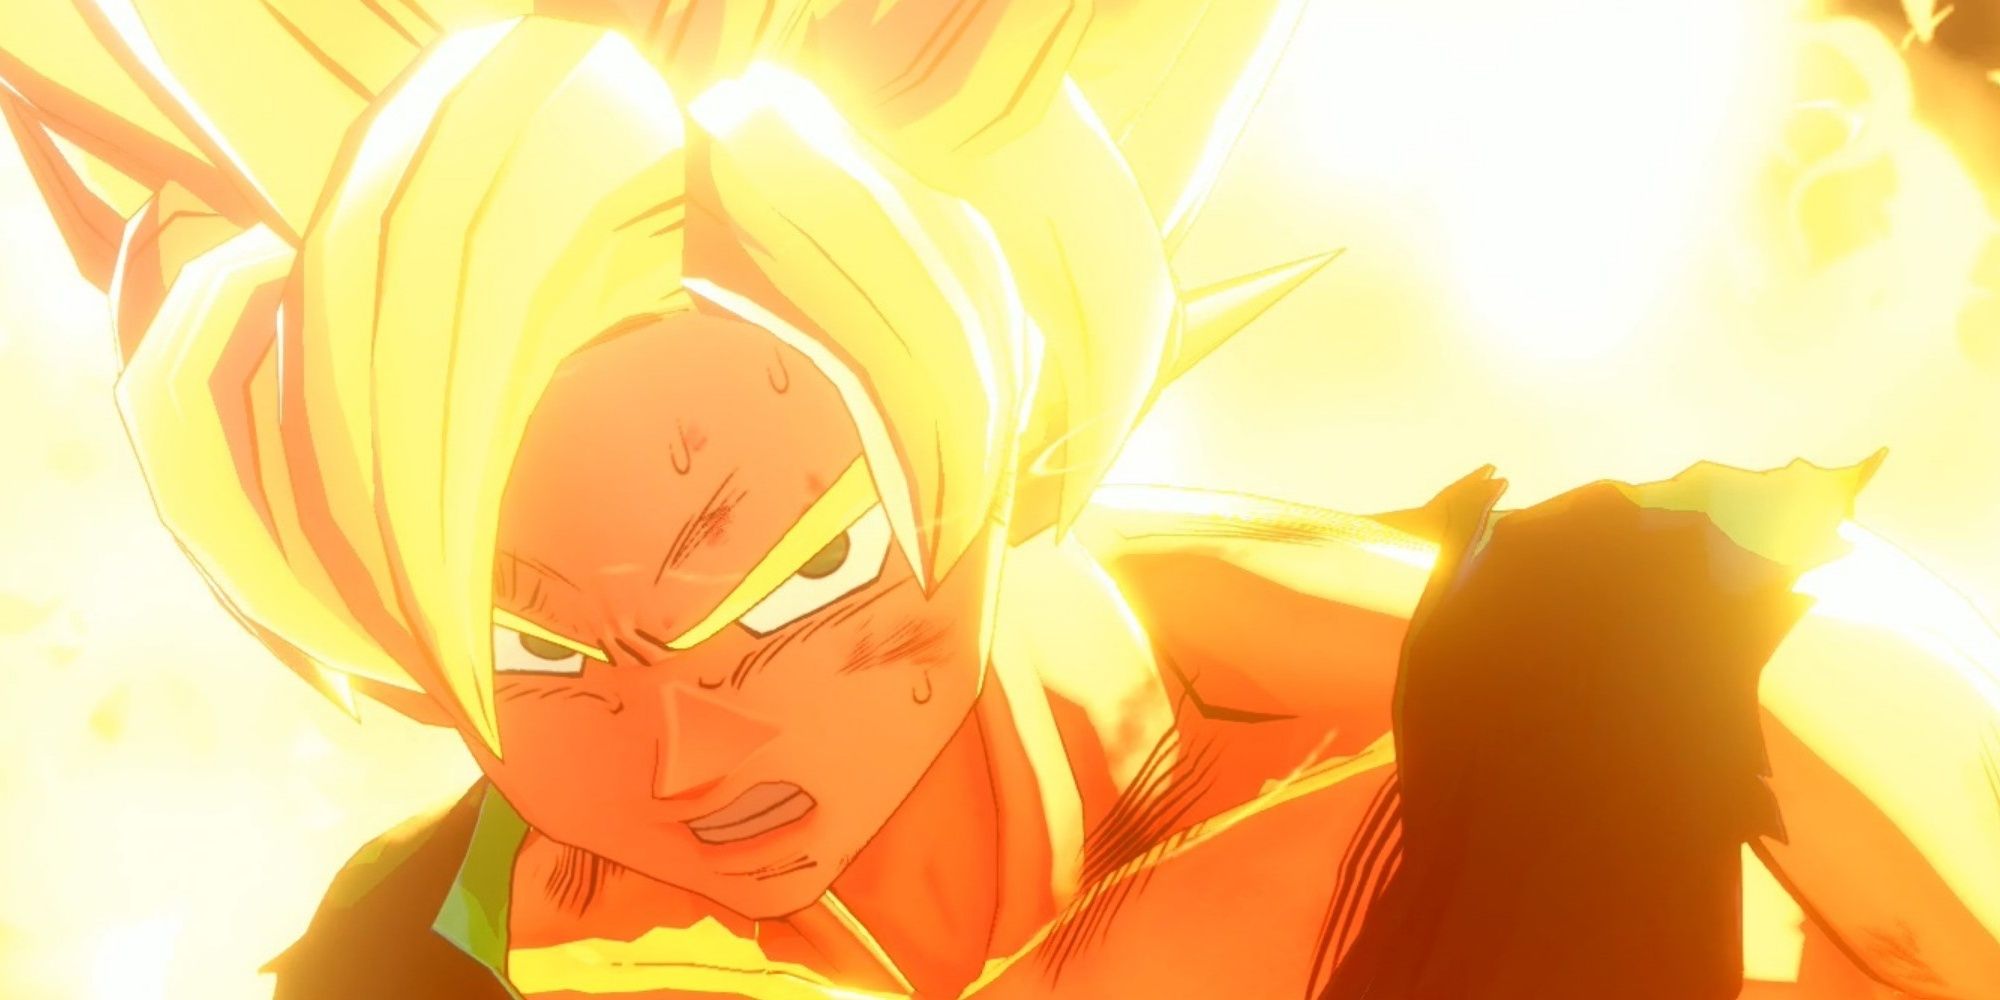 Goku in Super Saiyan